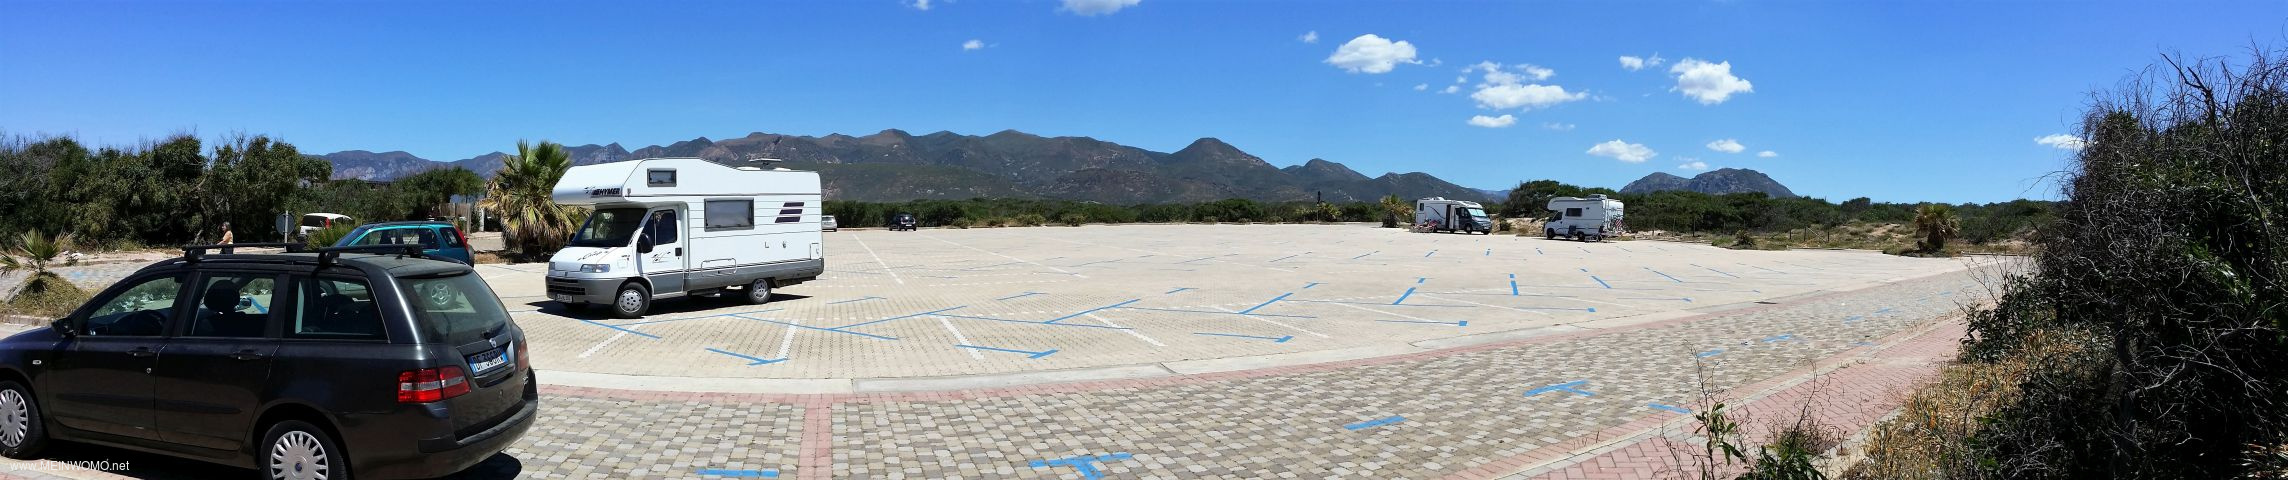 05.2017: Parkplatz im Mai noch recht leer.